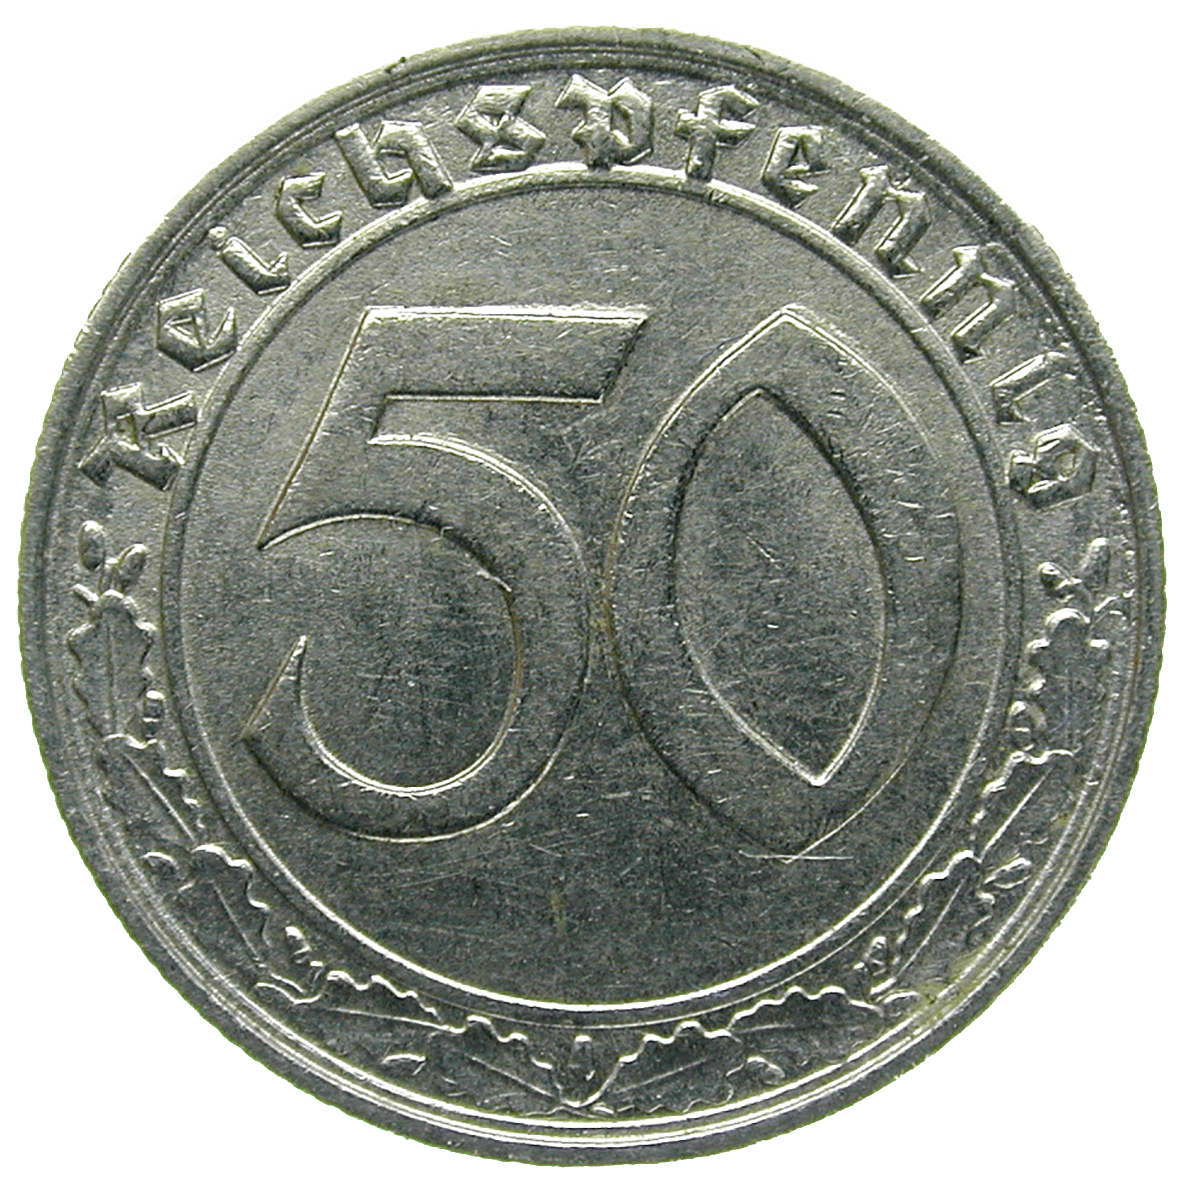 Deutsches Drittes Reich, 50 Reichspfennig 1938 (reverse)